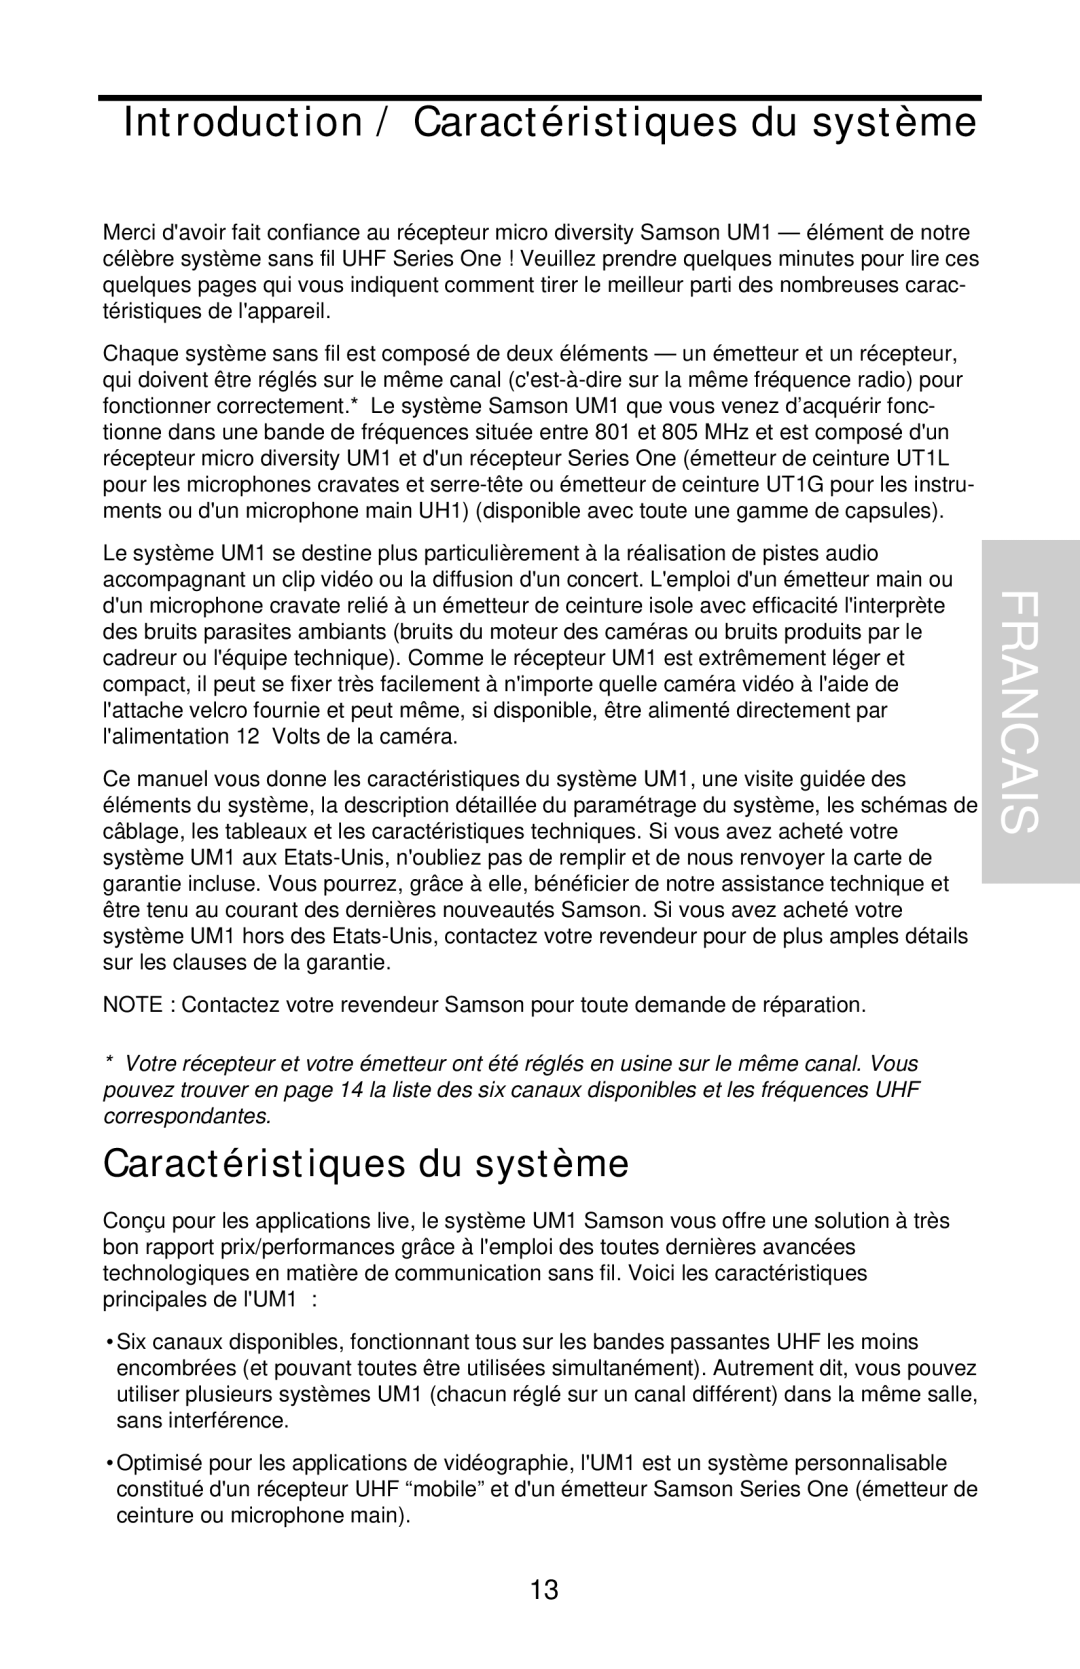 Samson UHF Series One owner manual Francais, Introduction / Caractéristiques du système 